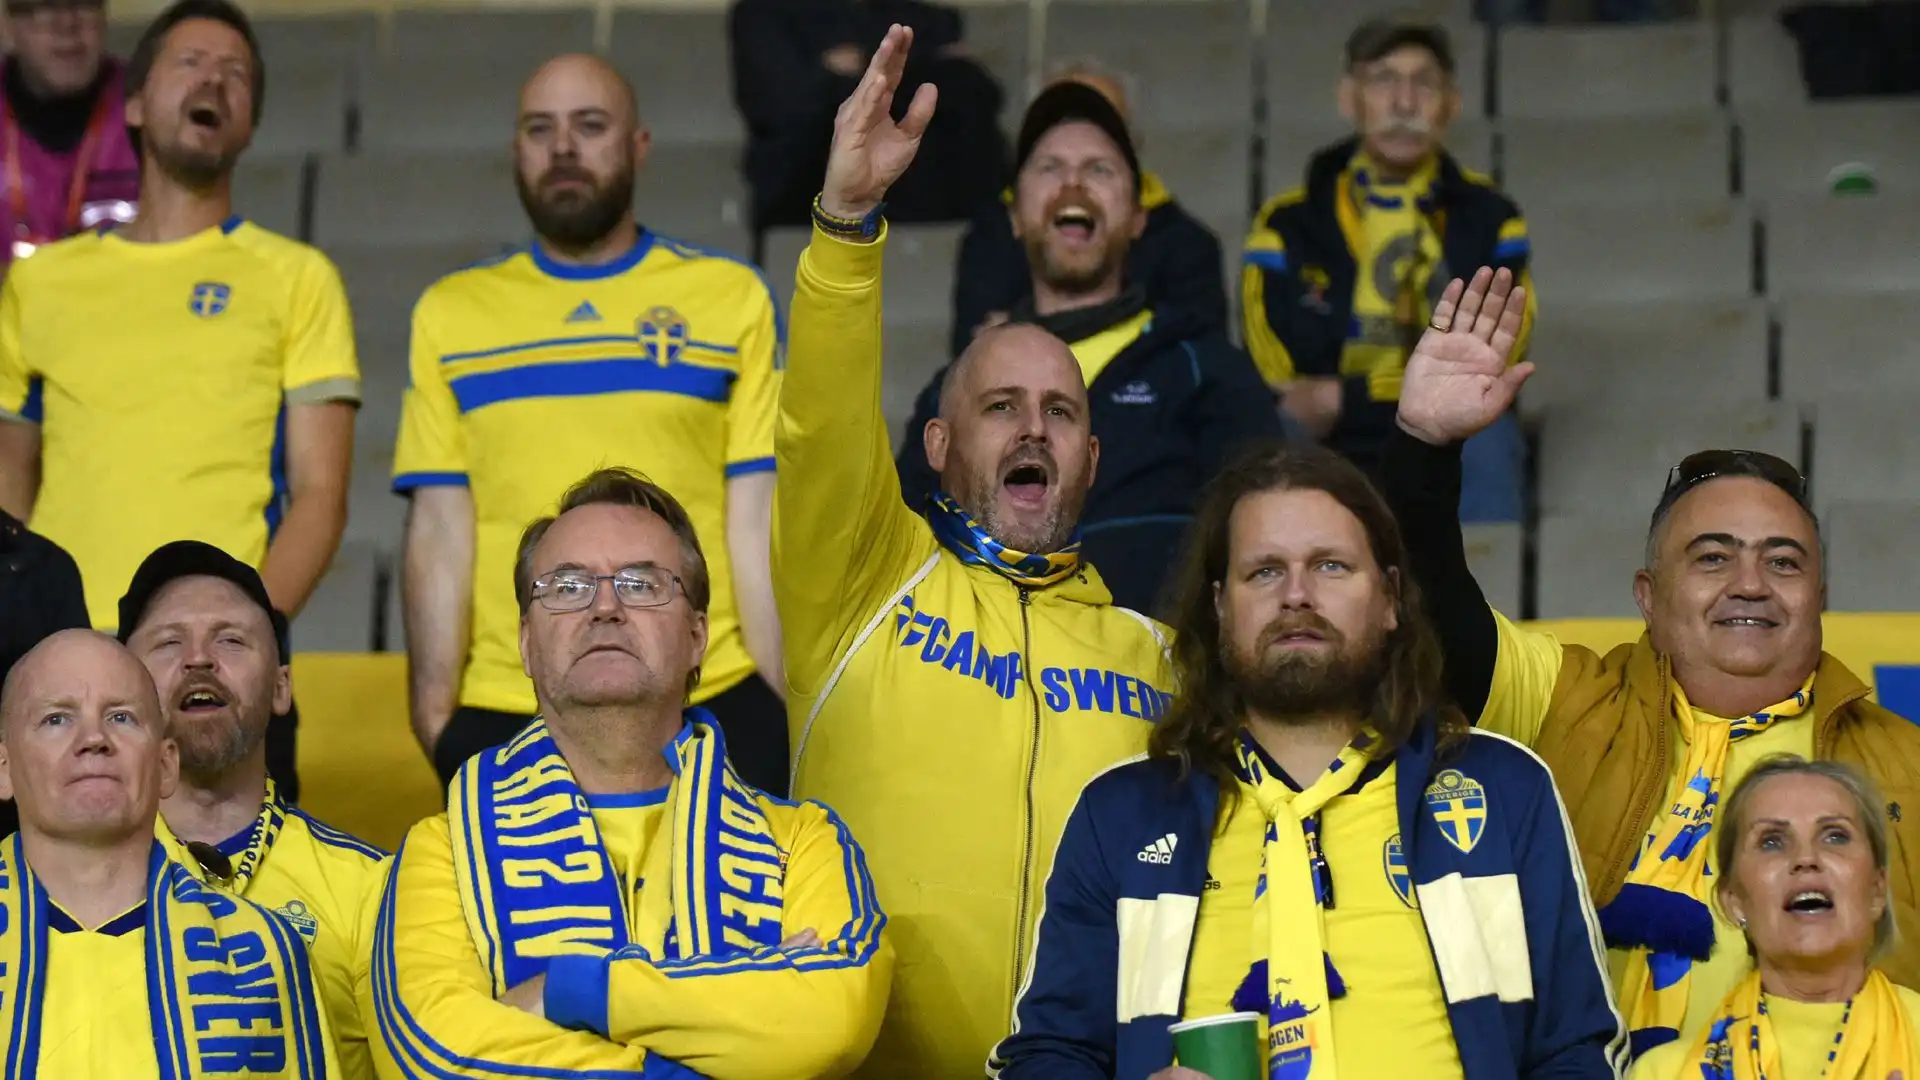 Grande sconcerto tra i tifosi svedesi che hanno seguito la loro squadra